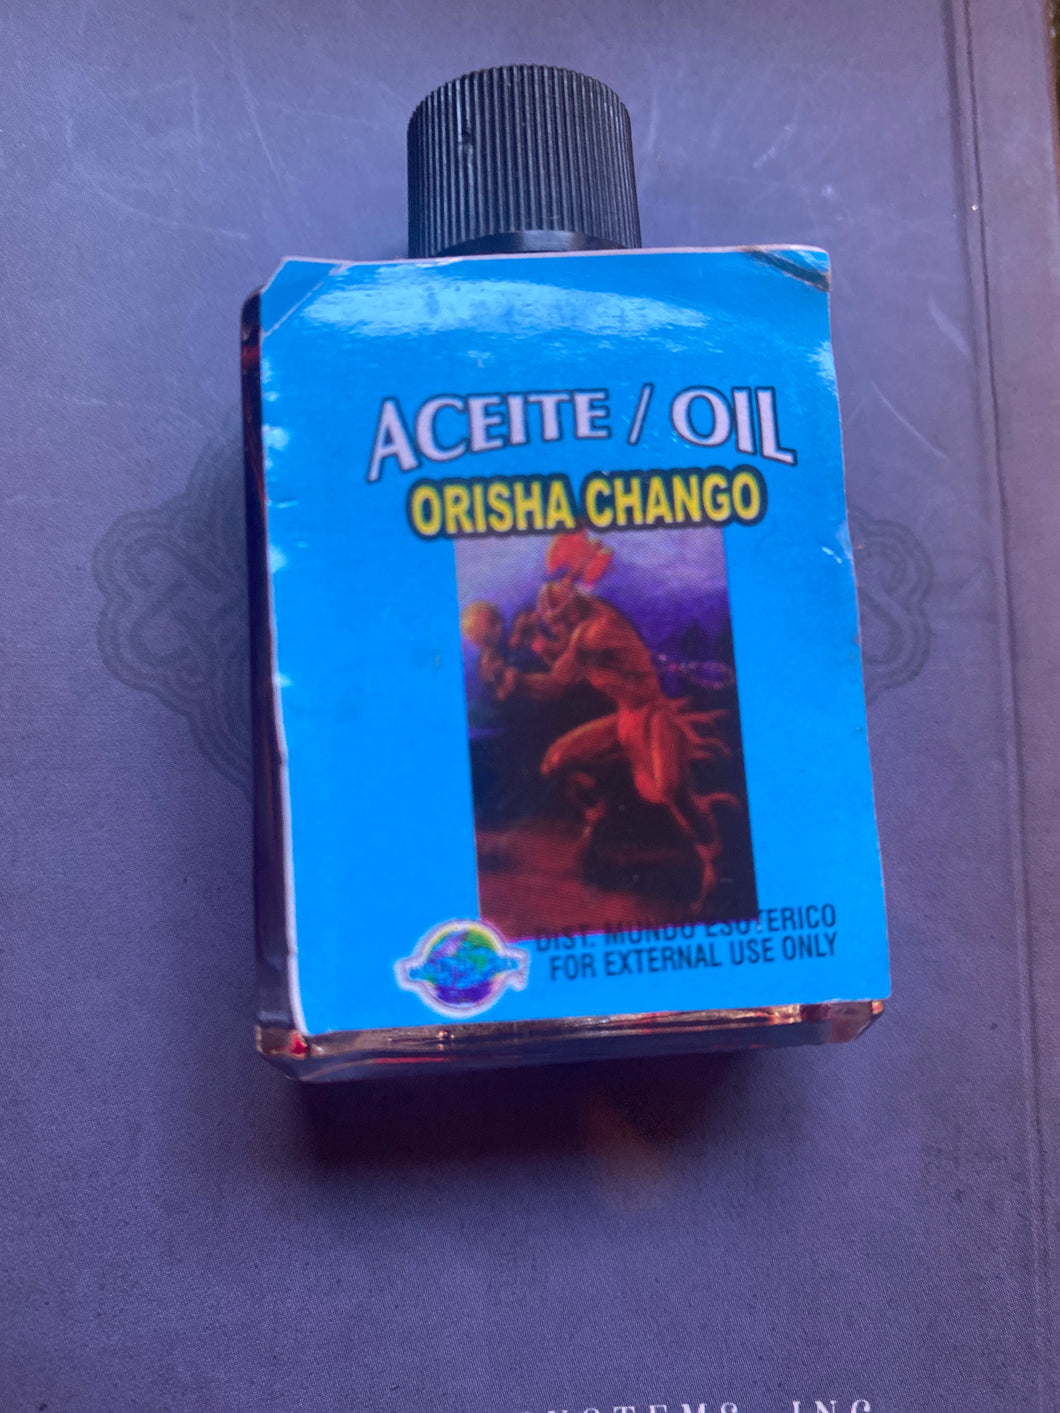 Orisha Chango oil